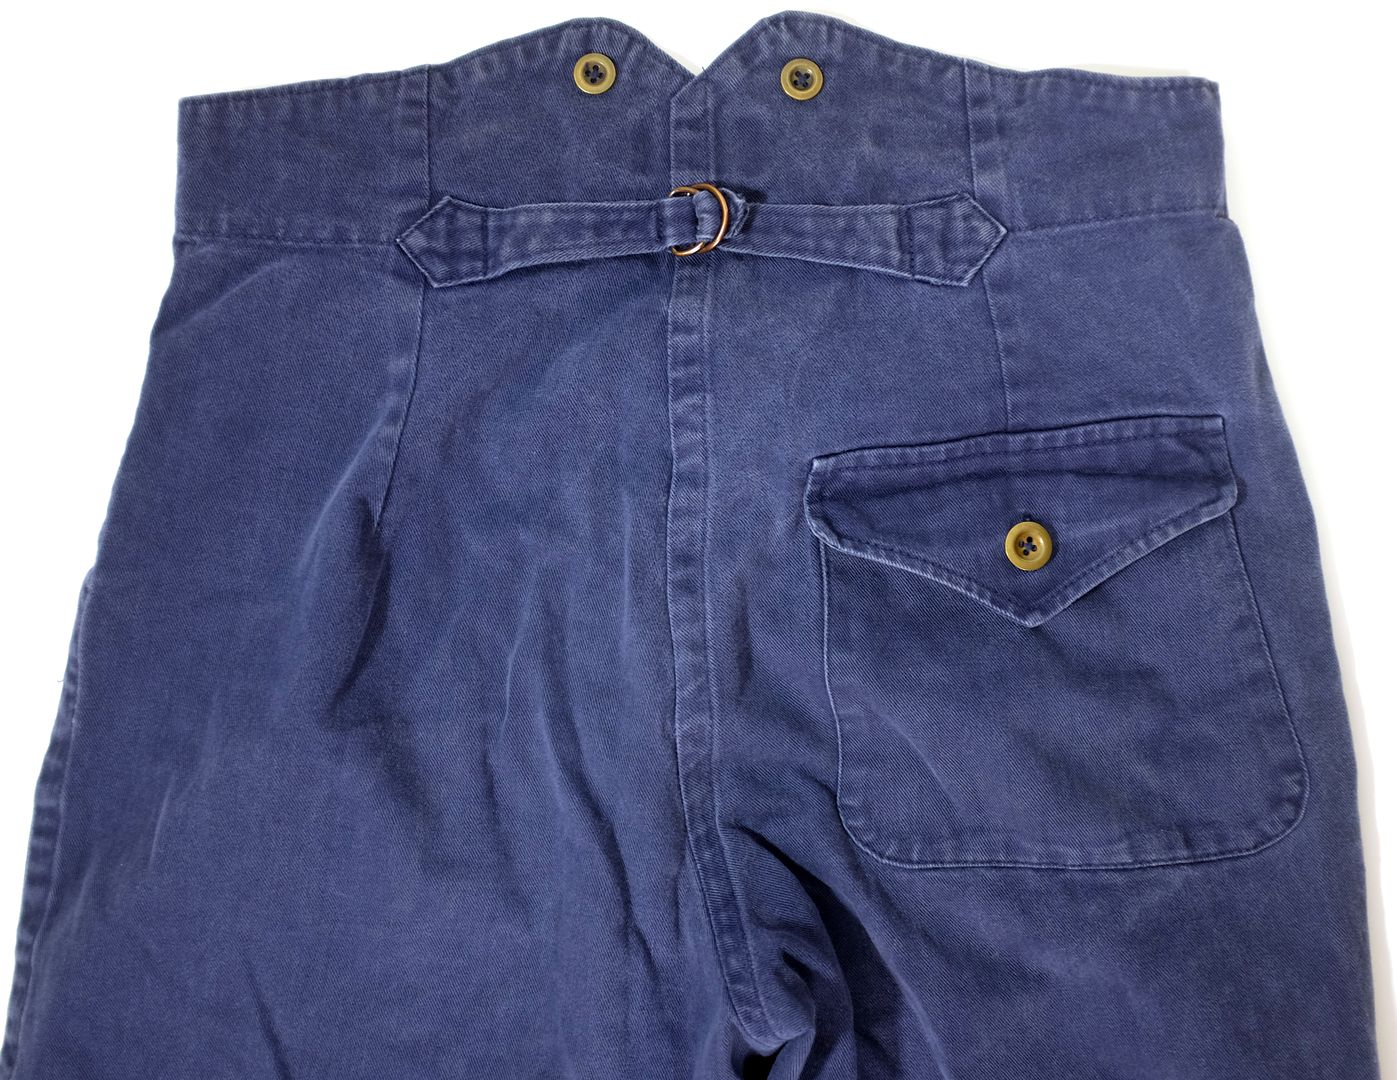 Old Town pants | Vintage-Haberdashers Blog